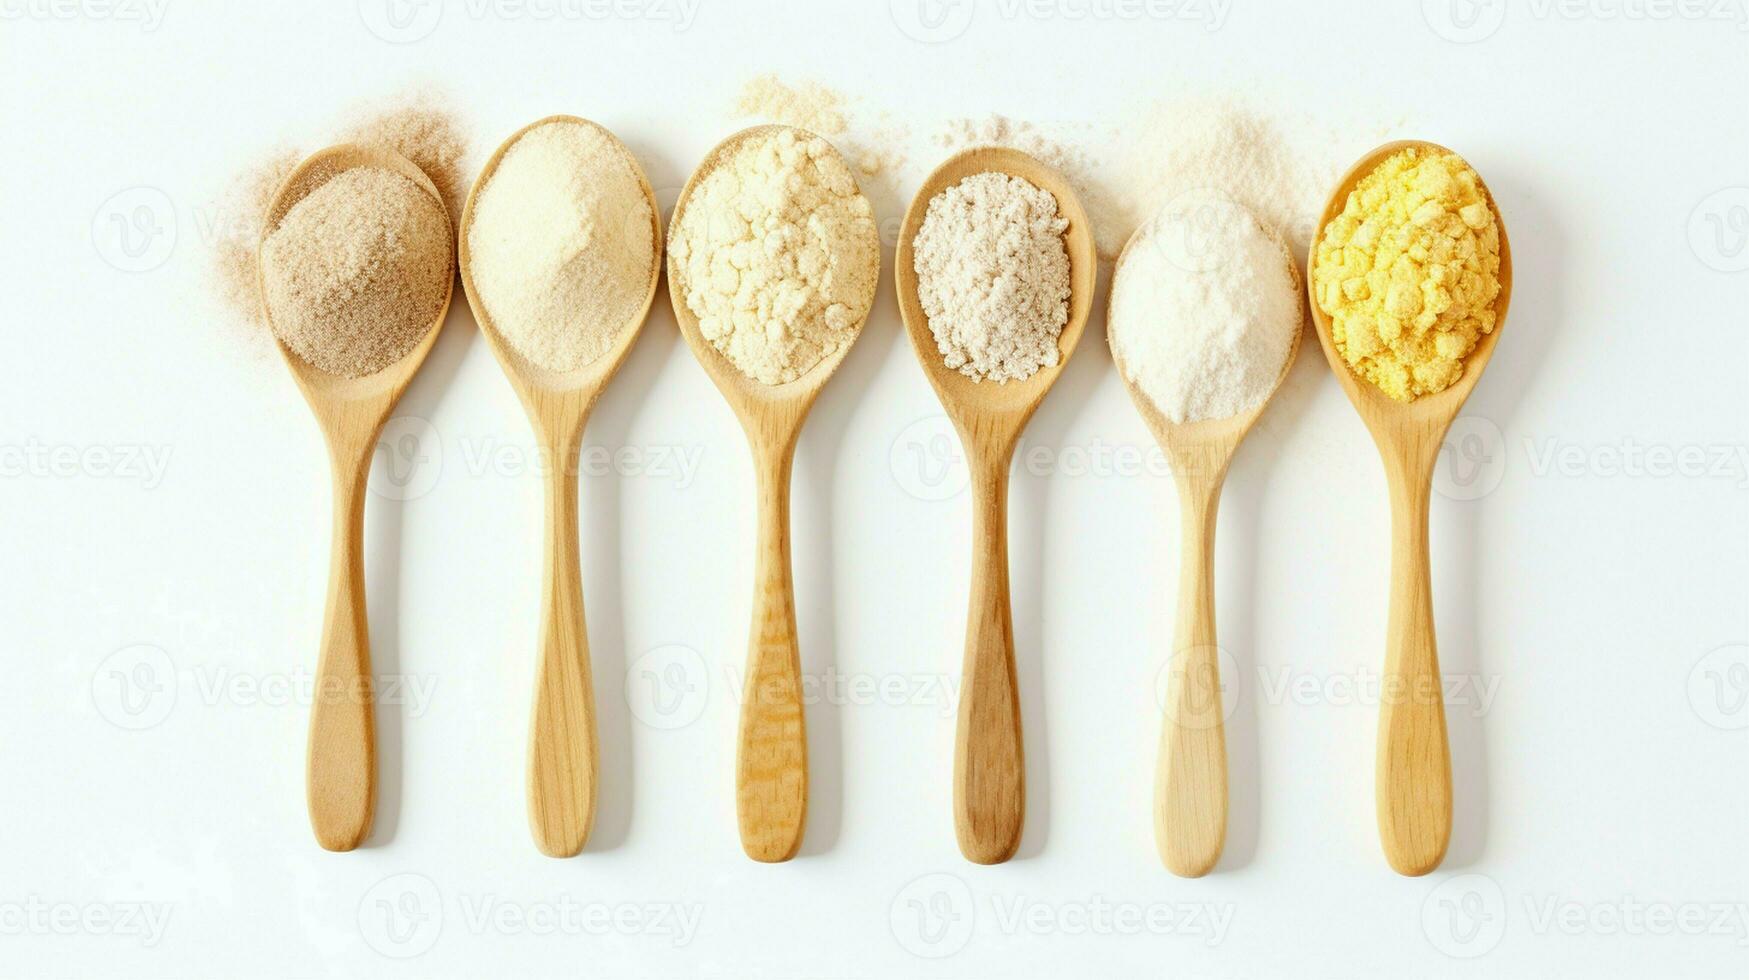 trä- skedar av olika gluten fri mjöl mandel mjöl, amarant frön mjöl, bovete mjöl, ris mjöl, brud ärtor mjöl från topp se vit bakgrund. foto